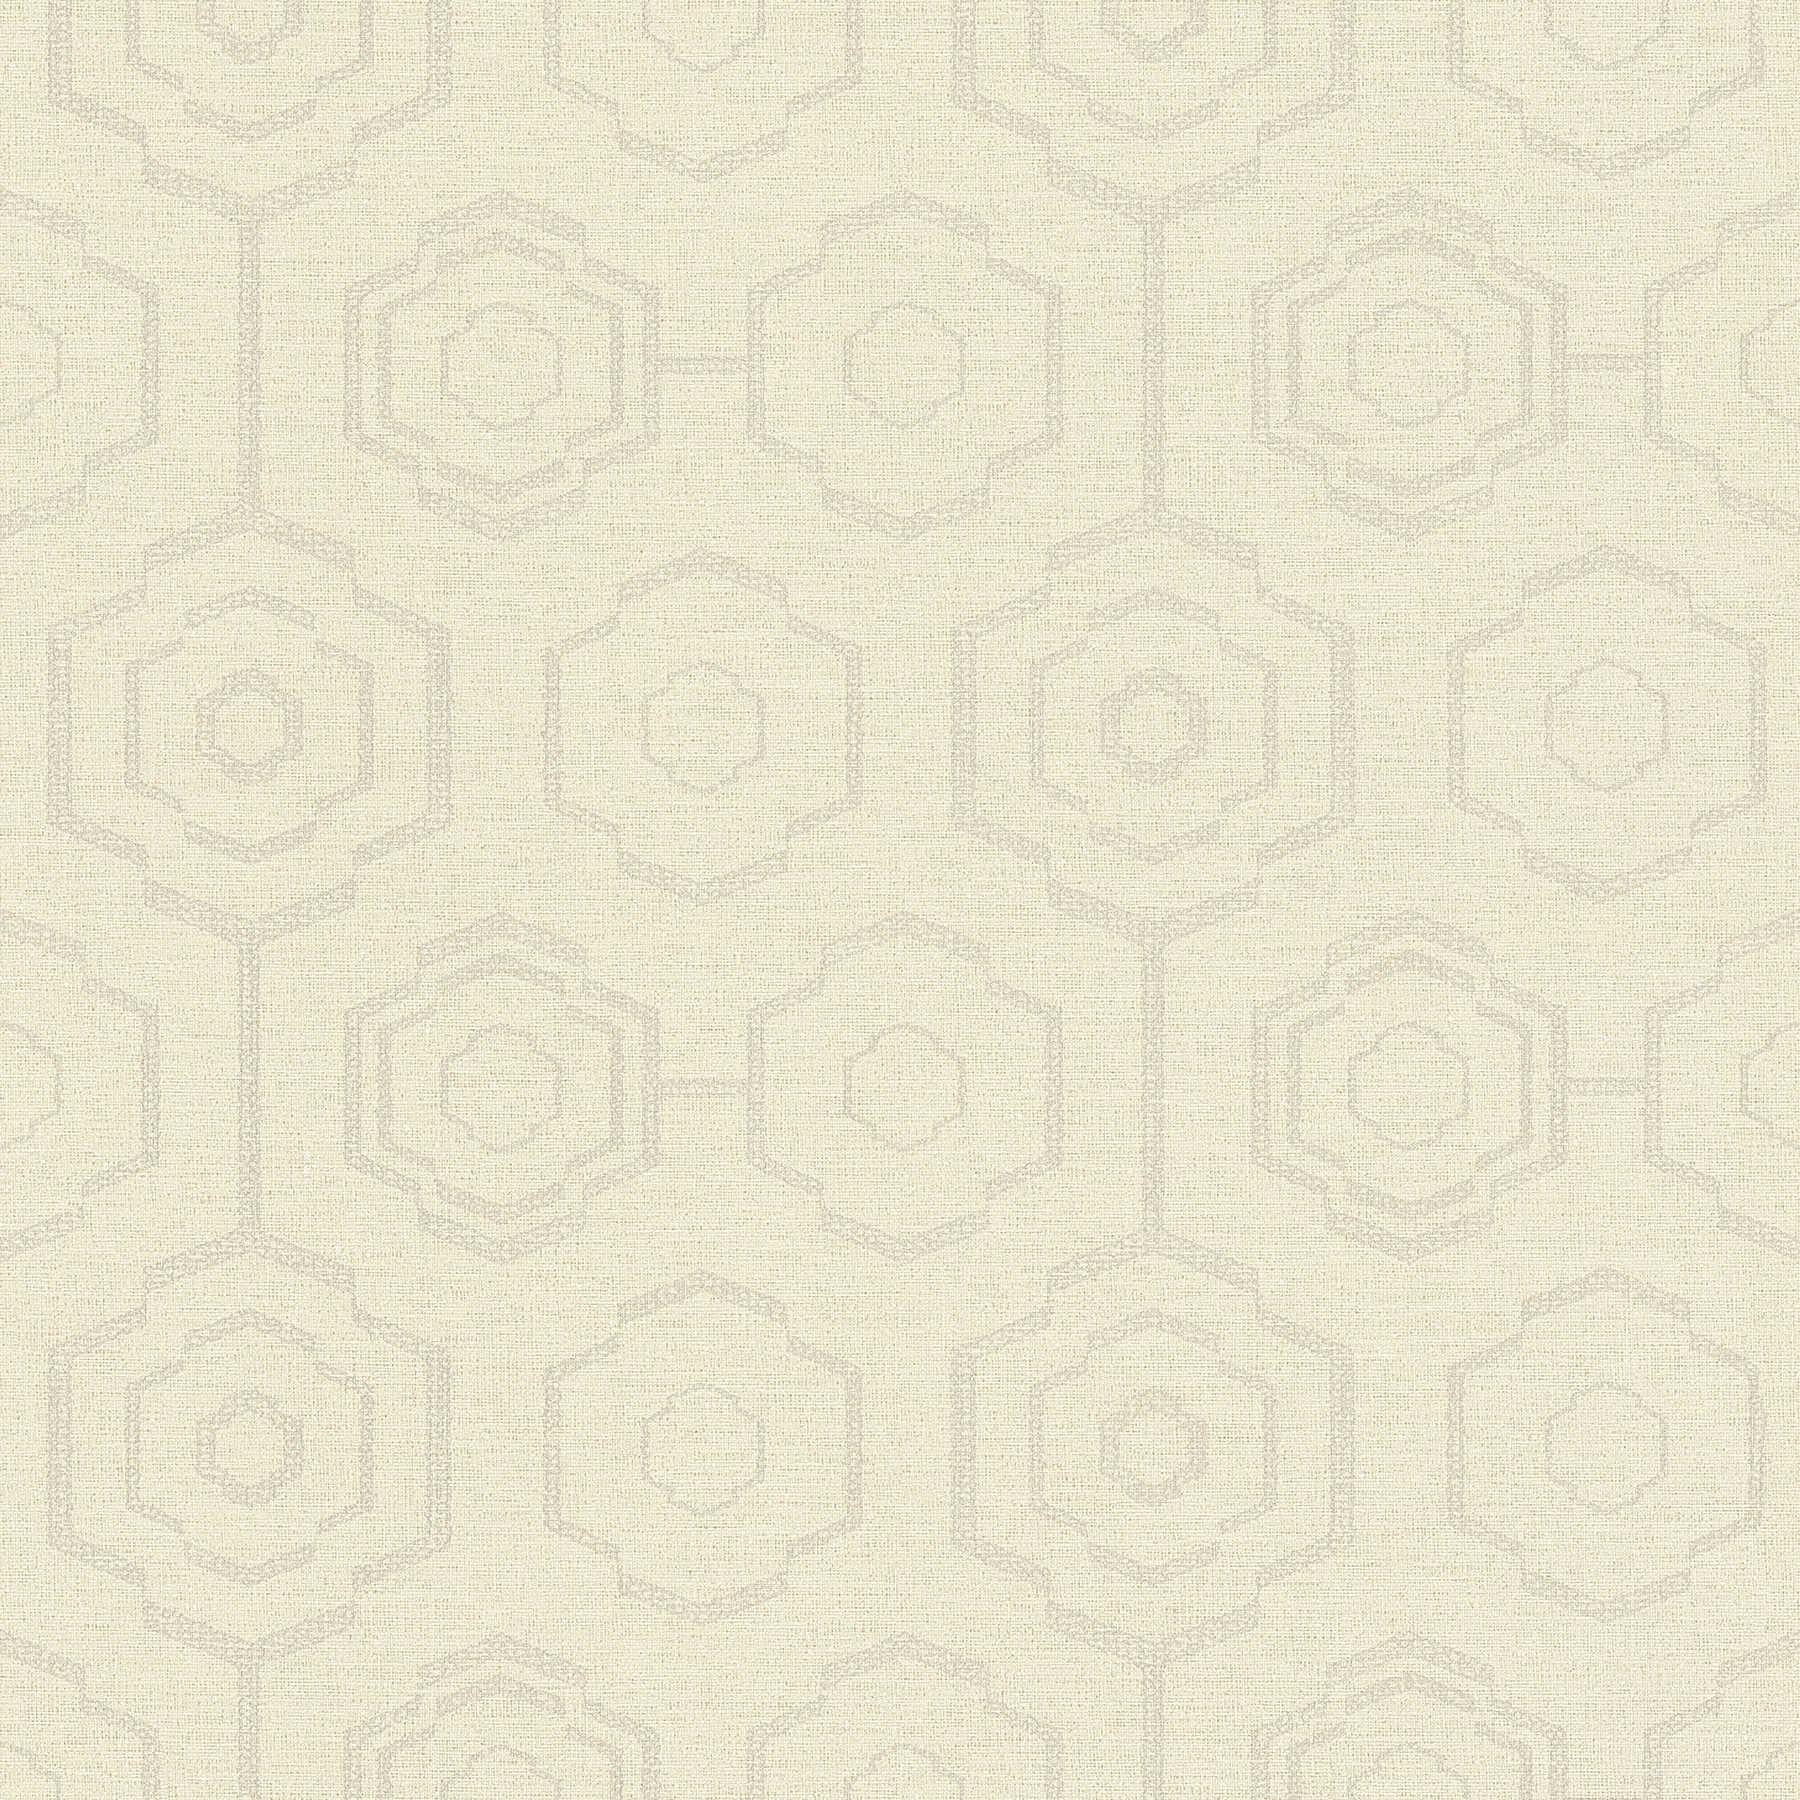 Carta da parati in tessuto con disegno geometrico ed effetto lucido - crema, grigio, beige
